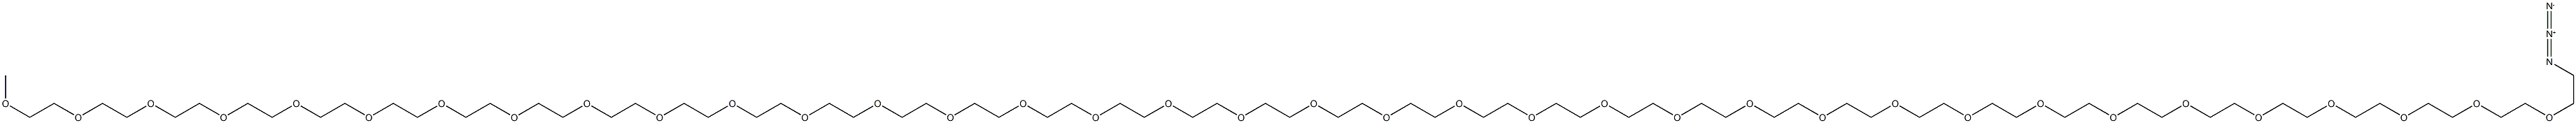 m-PEG12-azide structure